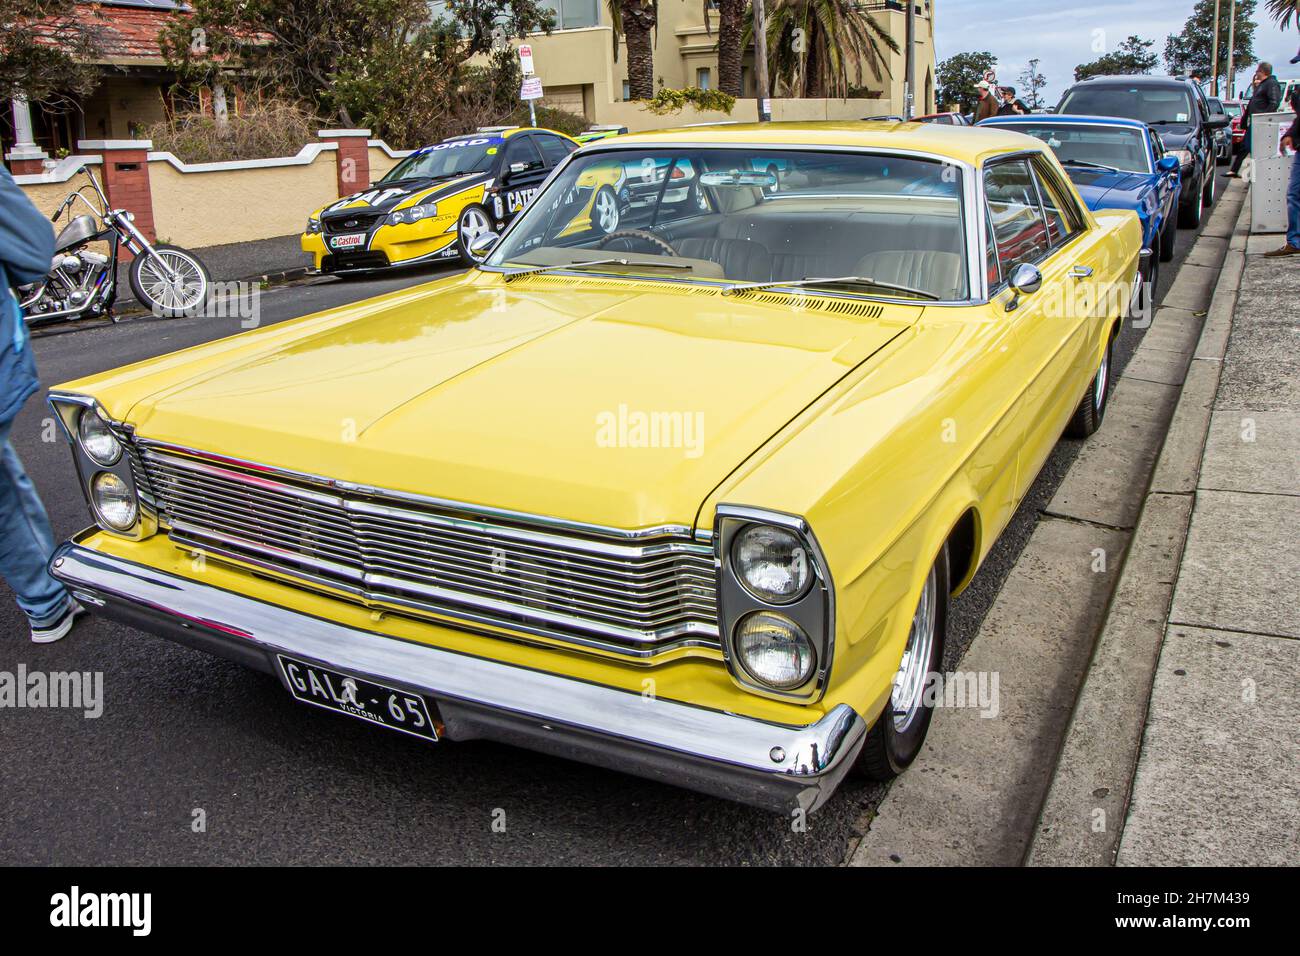 Ein klassisches gelbes Auto, das in den Straßen von St. Kilda geparkt wurde, an einem sonnigen Tag während der Autoschau neben dem Vergnügungspark. Melbourne, Australien. Stockfoto